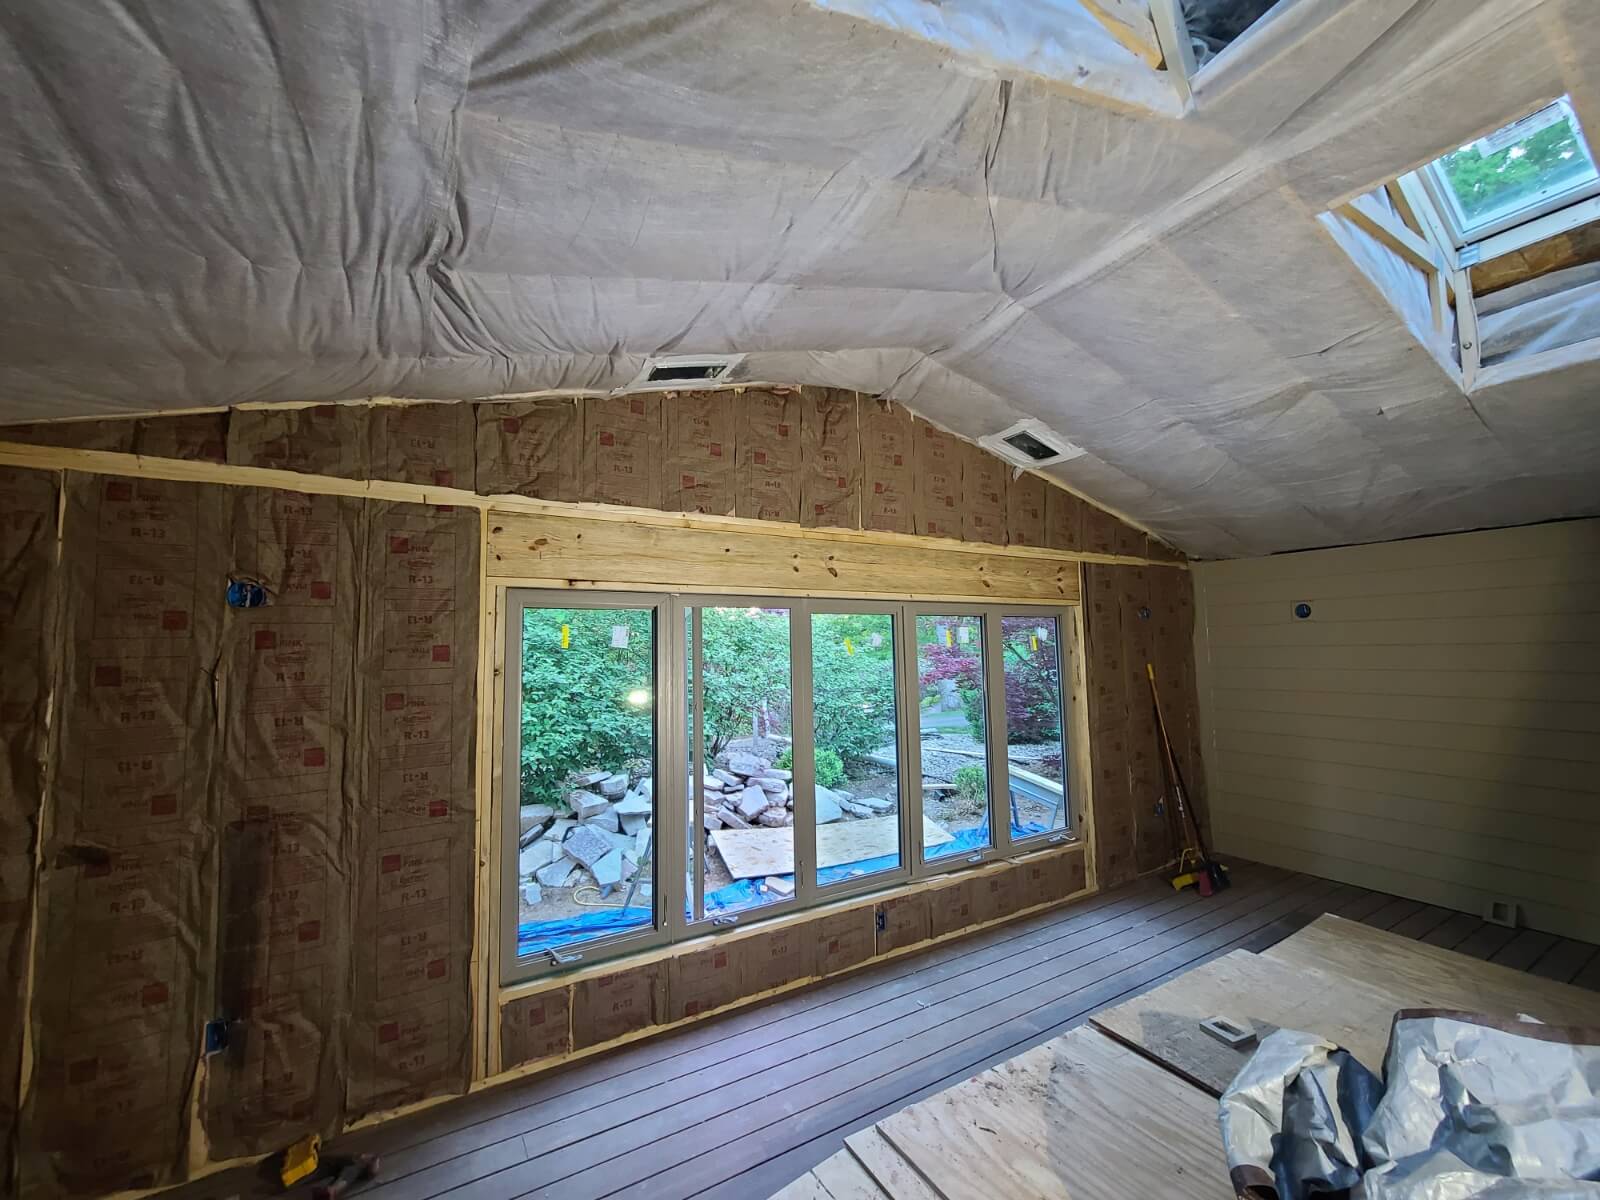 St. Louis attic insulation company